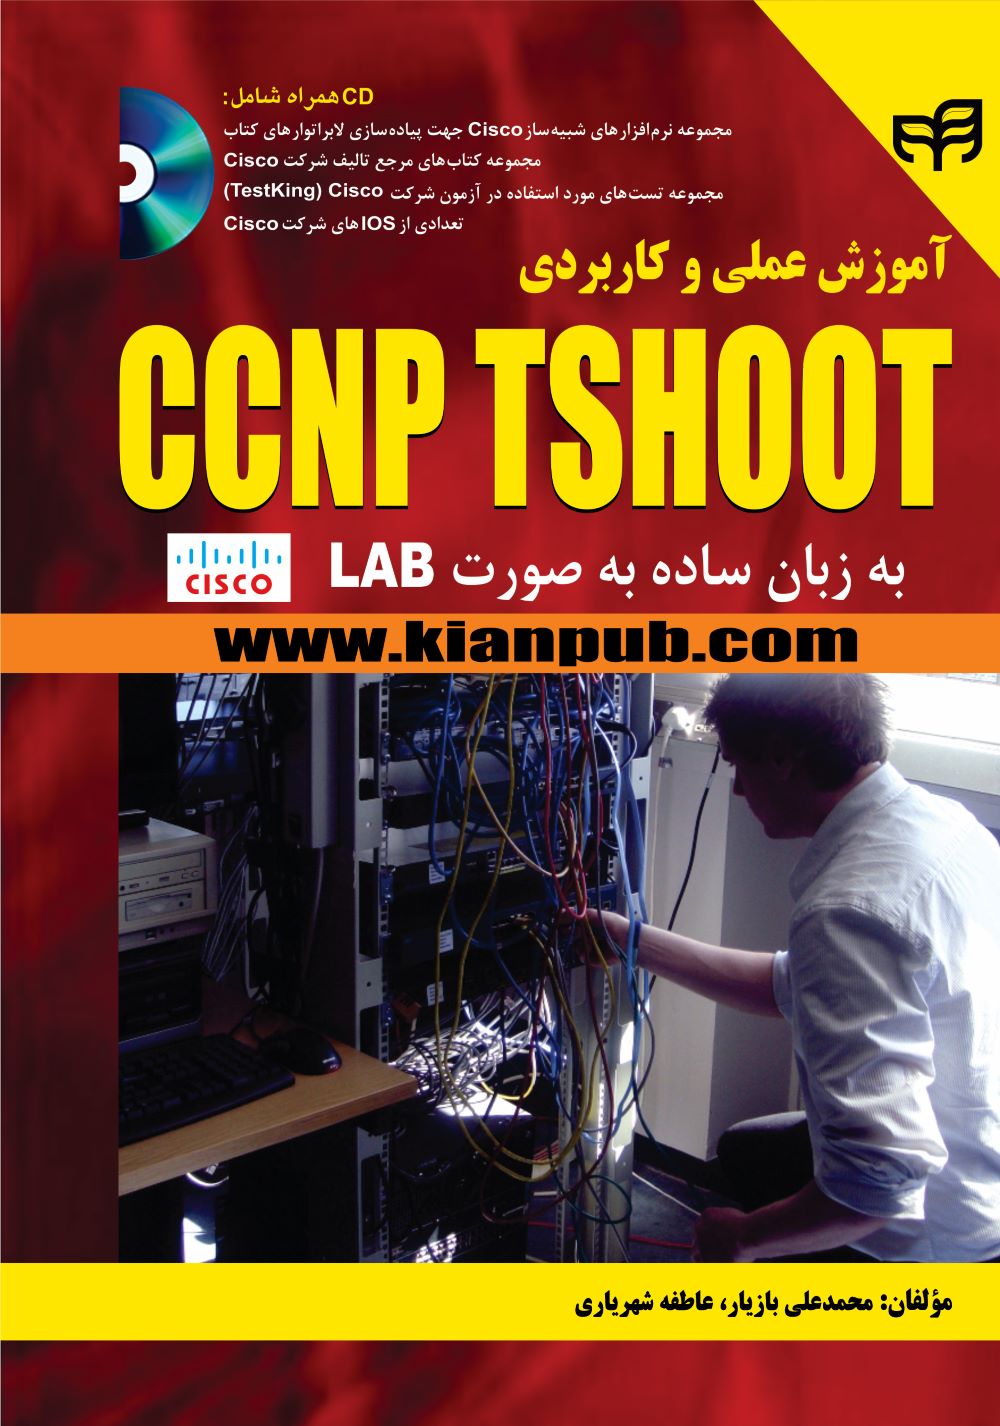  کتاب آموزش عملی و کاربردیCCNP TSHOOT